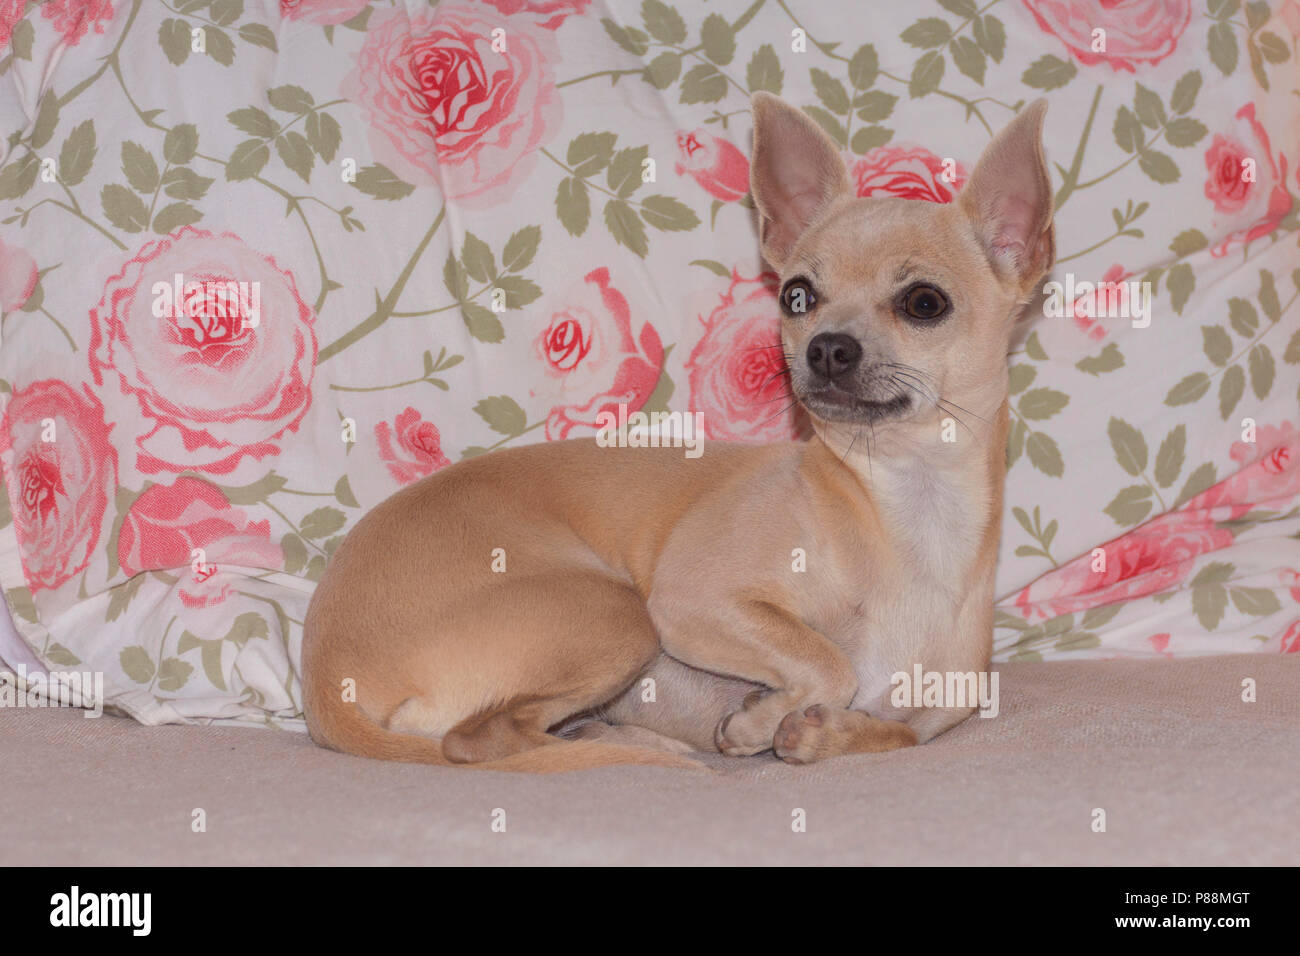 Belle choyé chihuahua puppy allongé sur un canapé en face d'un oreiller à motifs fleuris rose rose Banque D'Images